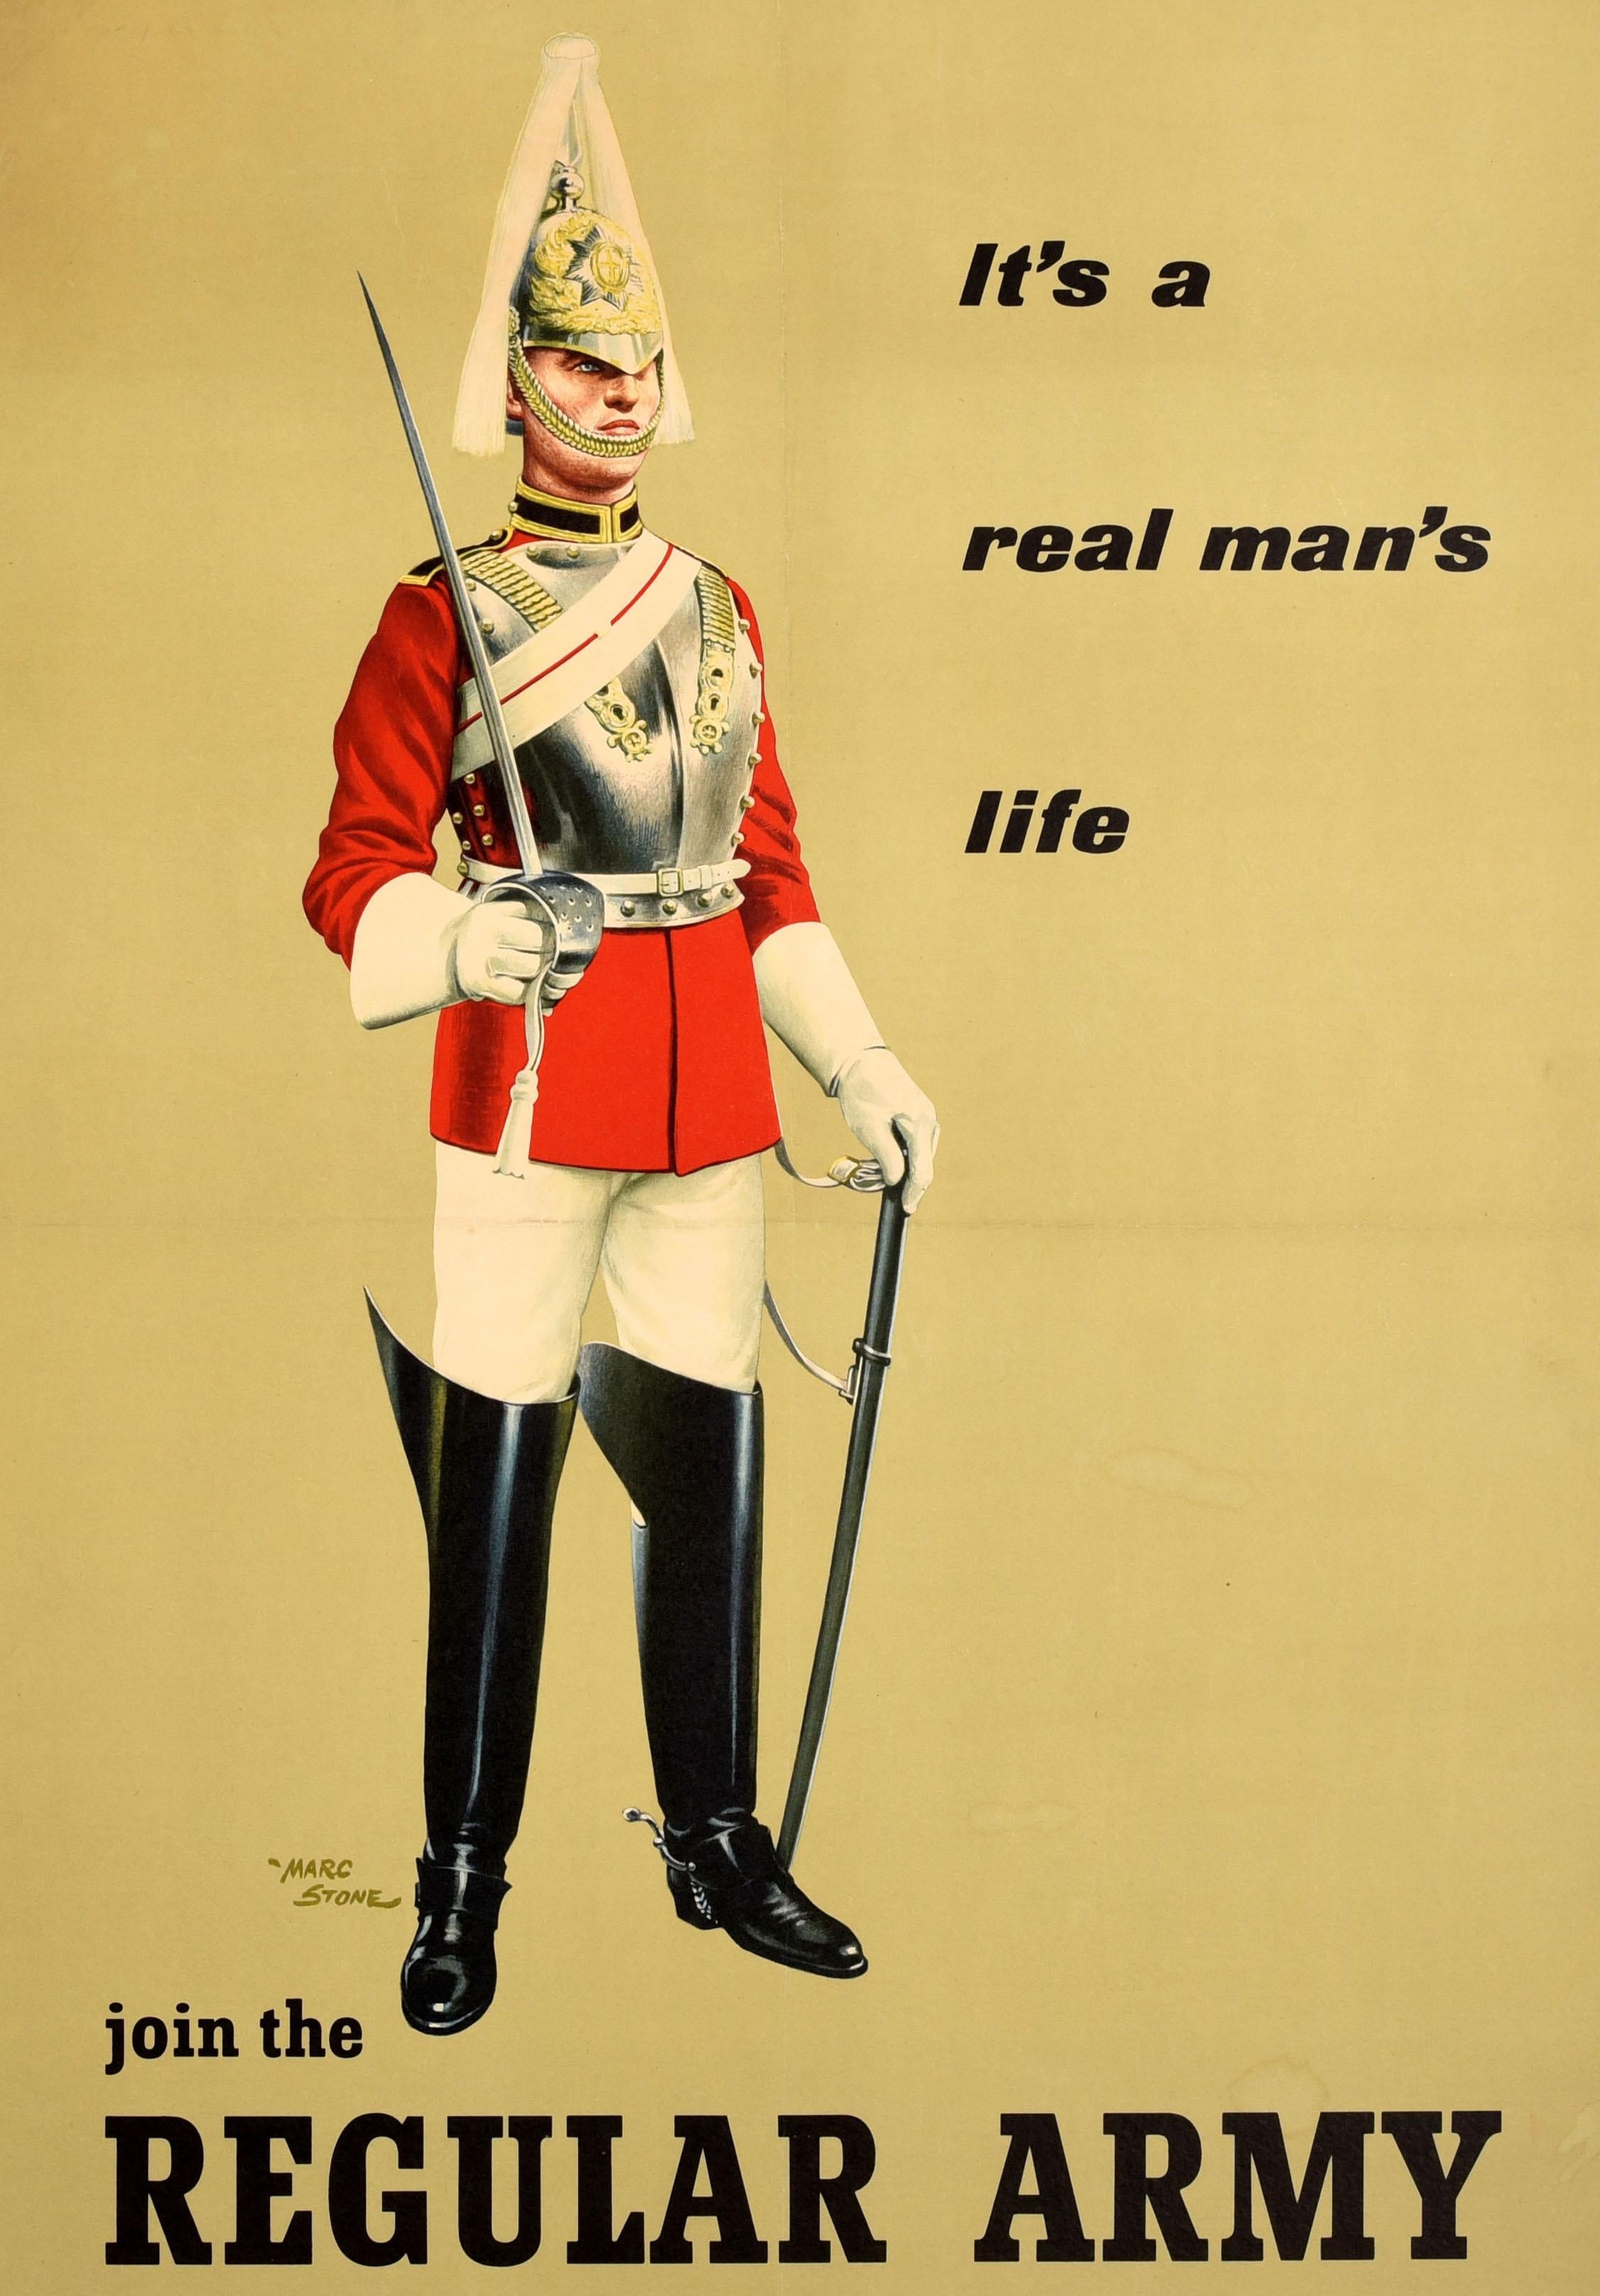 Affiche originale de recrutement de l'armée britannique - Join the Regular Army It's a Real Man's Life - présentant une image étonnante de l'artiste britannique Marcus Stone (1909-1991) d'un garde royal en uniforme complet avec une cuirasse en